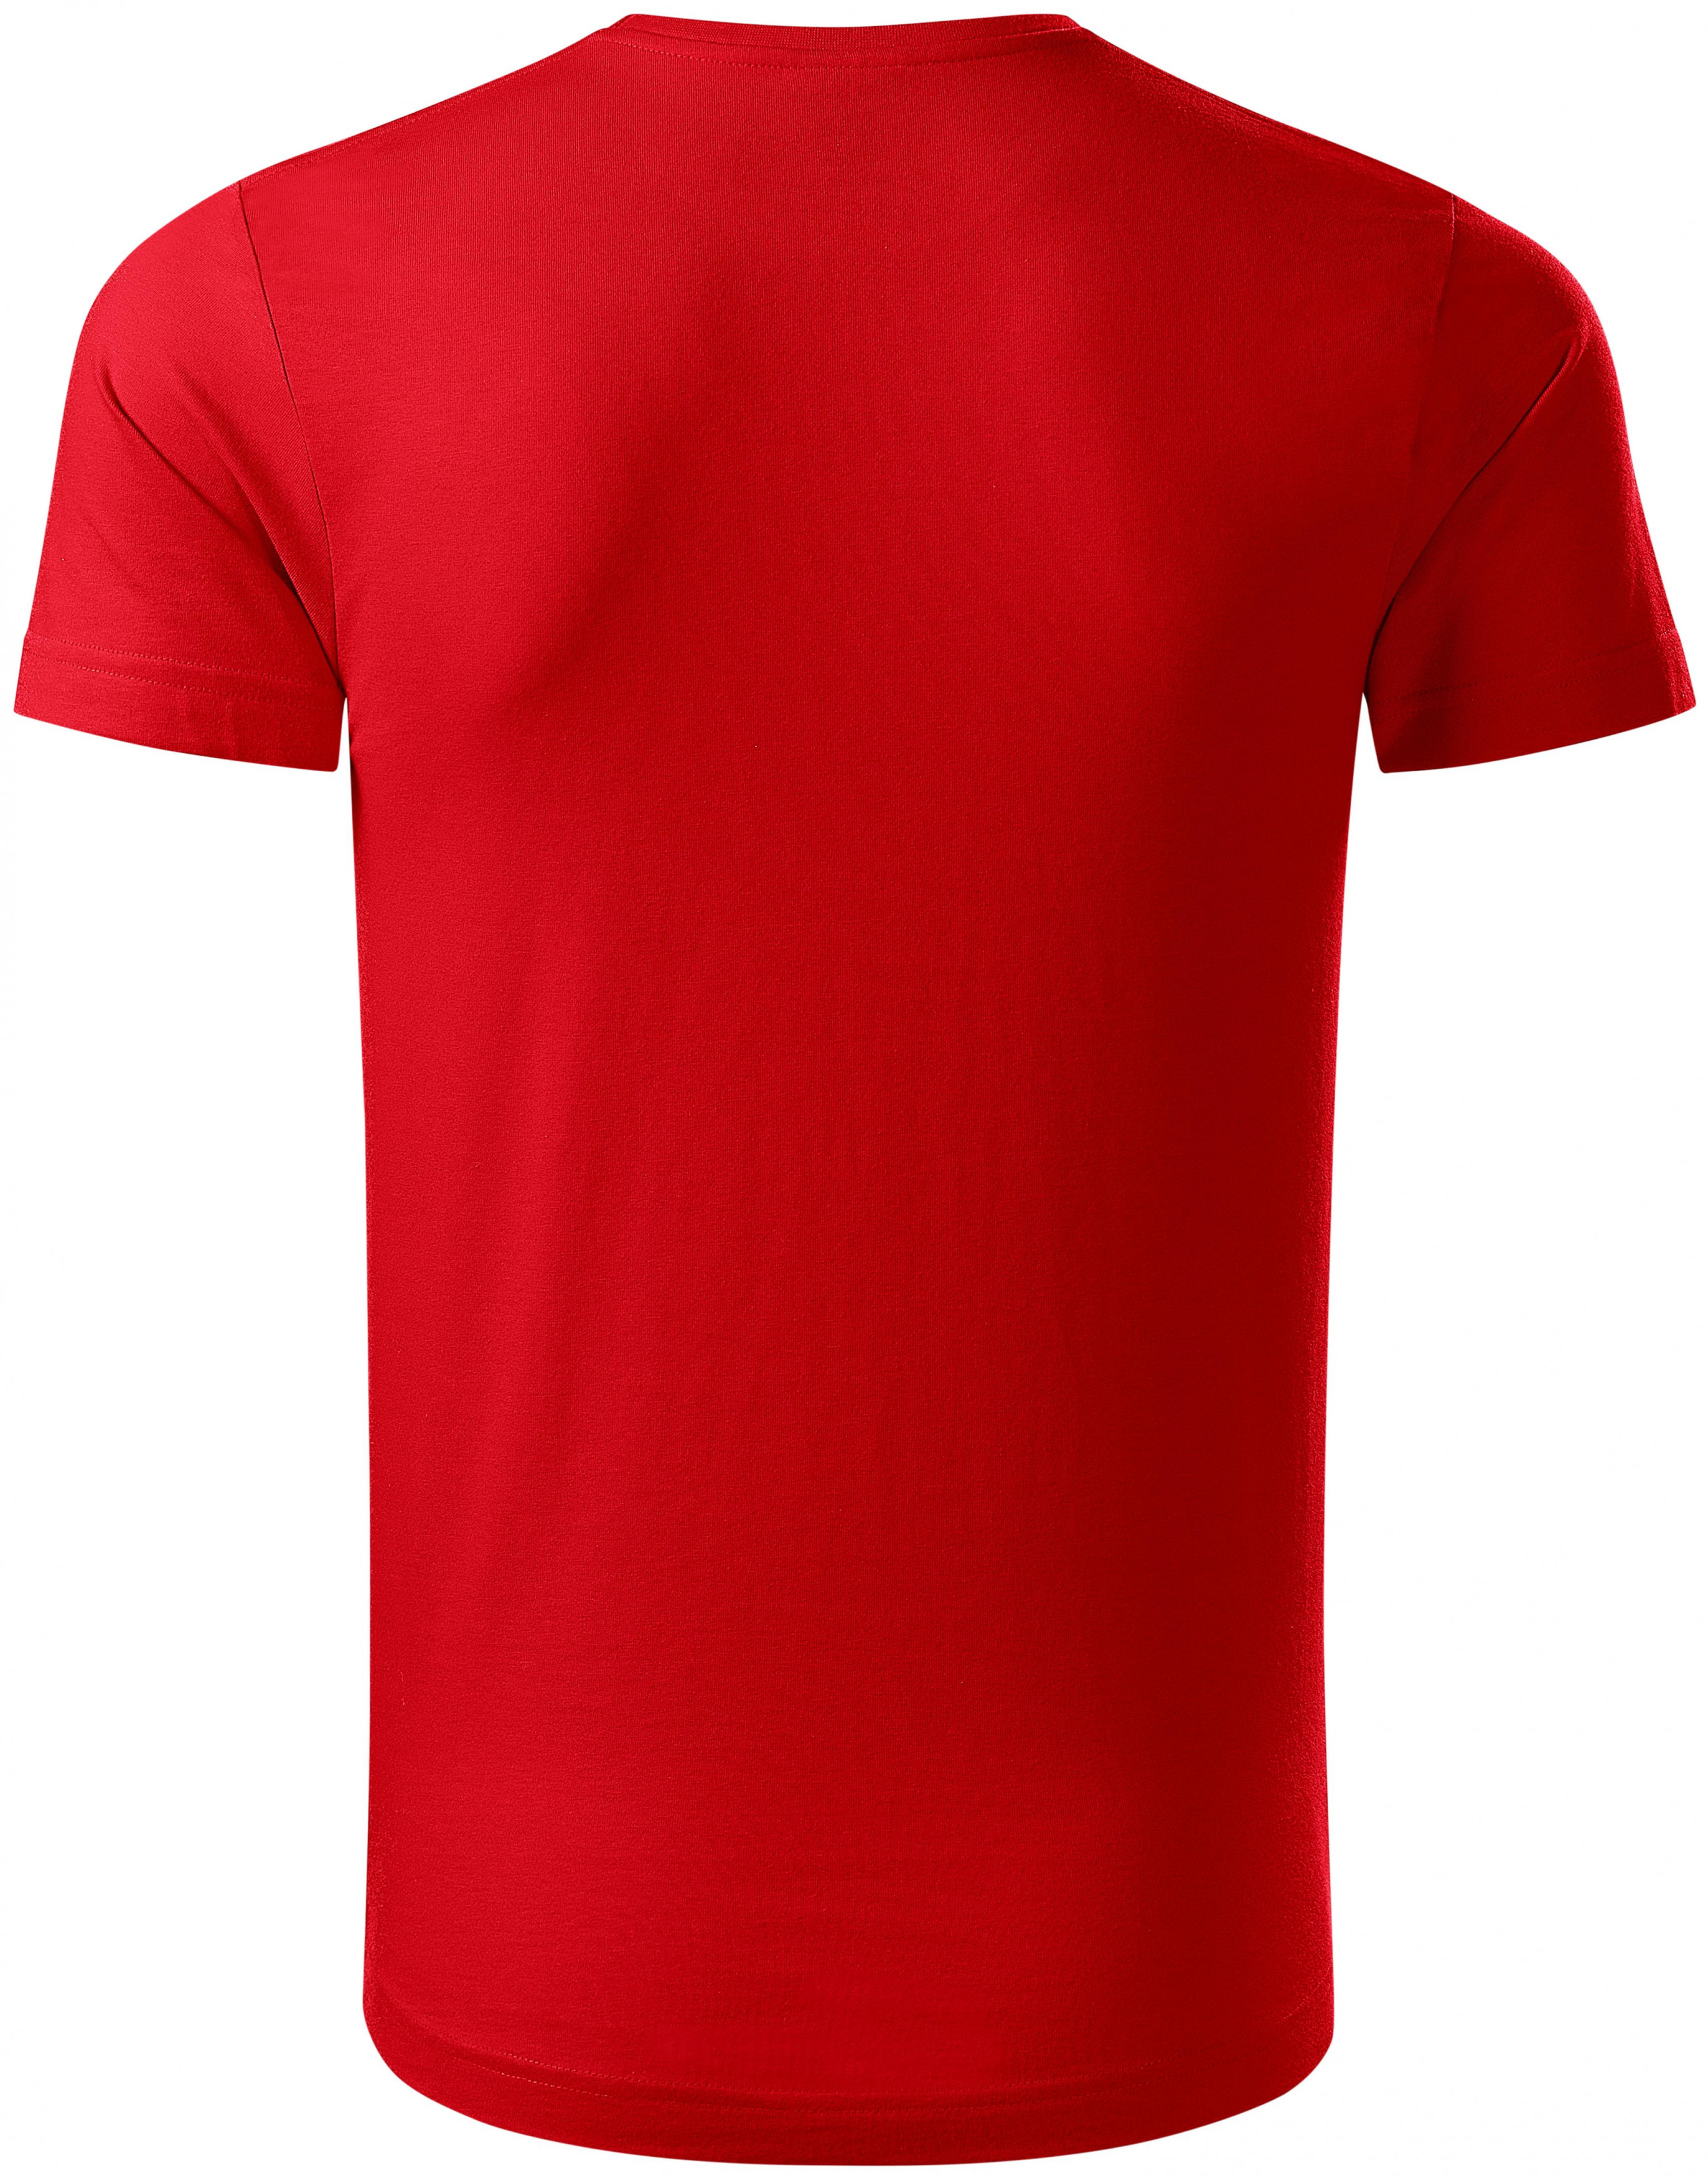 Pánske tričko, organická bavlna, červená, S